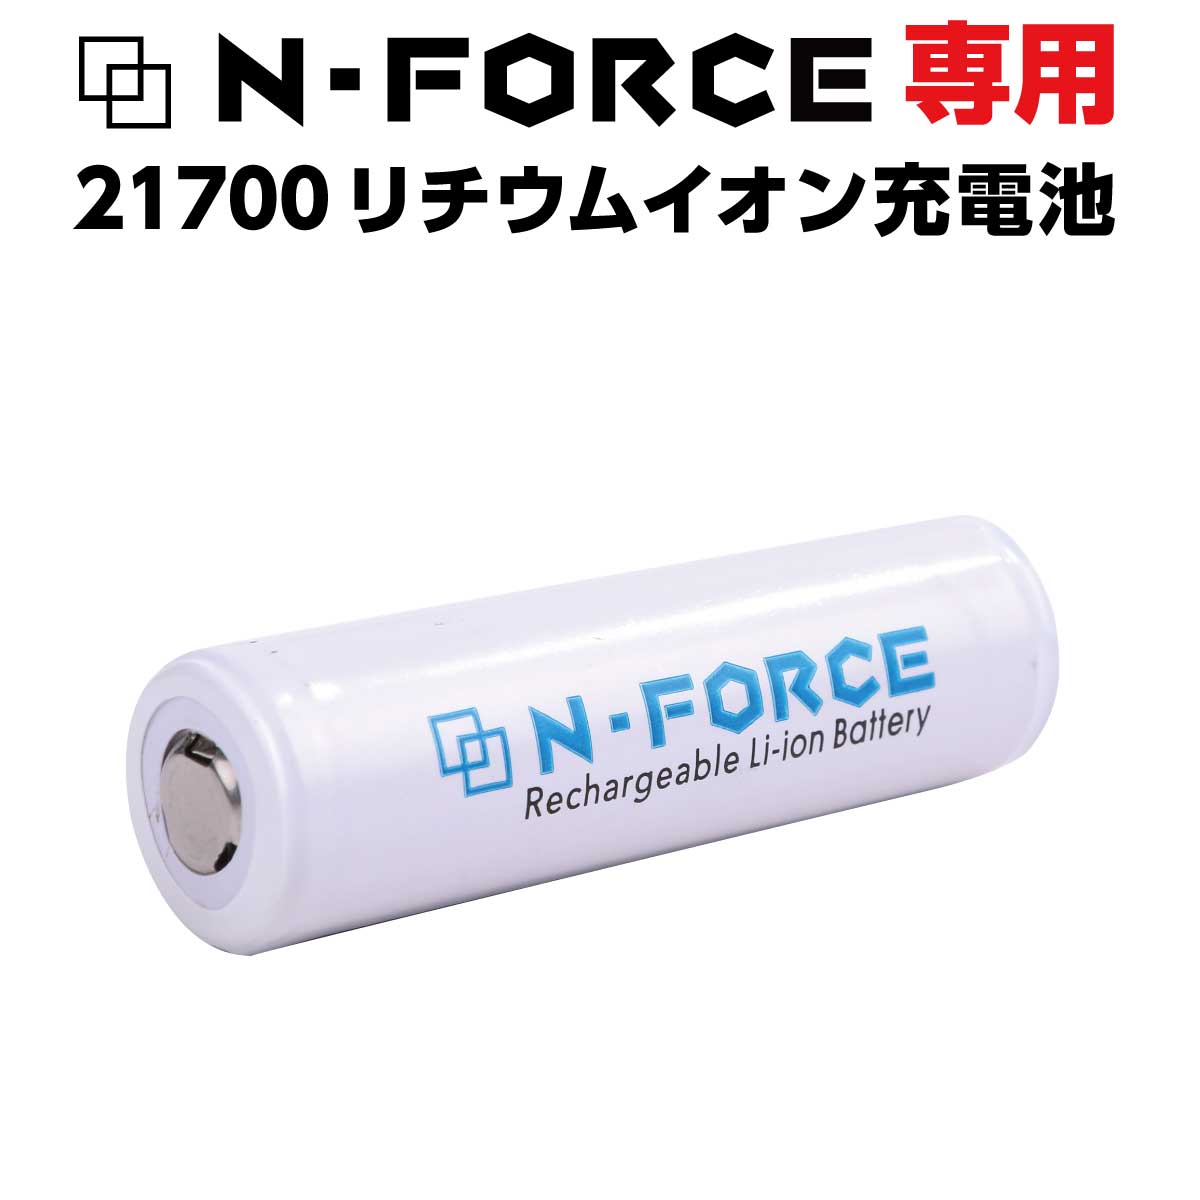 予備電池 N-FORCE専用 21700 リチウムイオン充電池×1本 